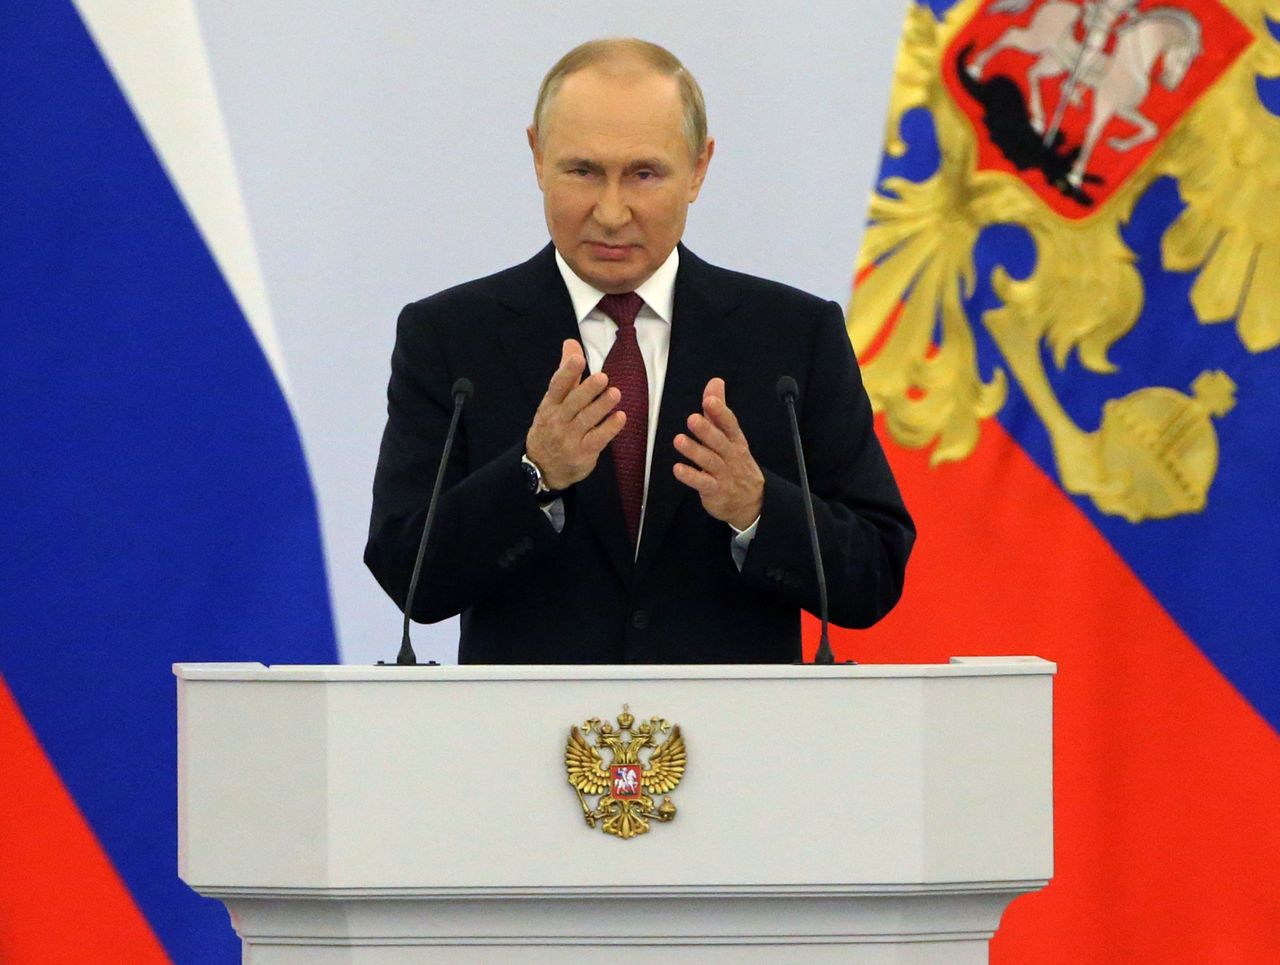 Putin w ogniu krytyki. "Idiota wdał się w wojnę z całym światem"